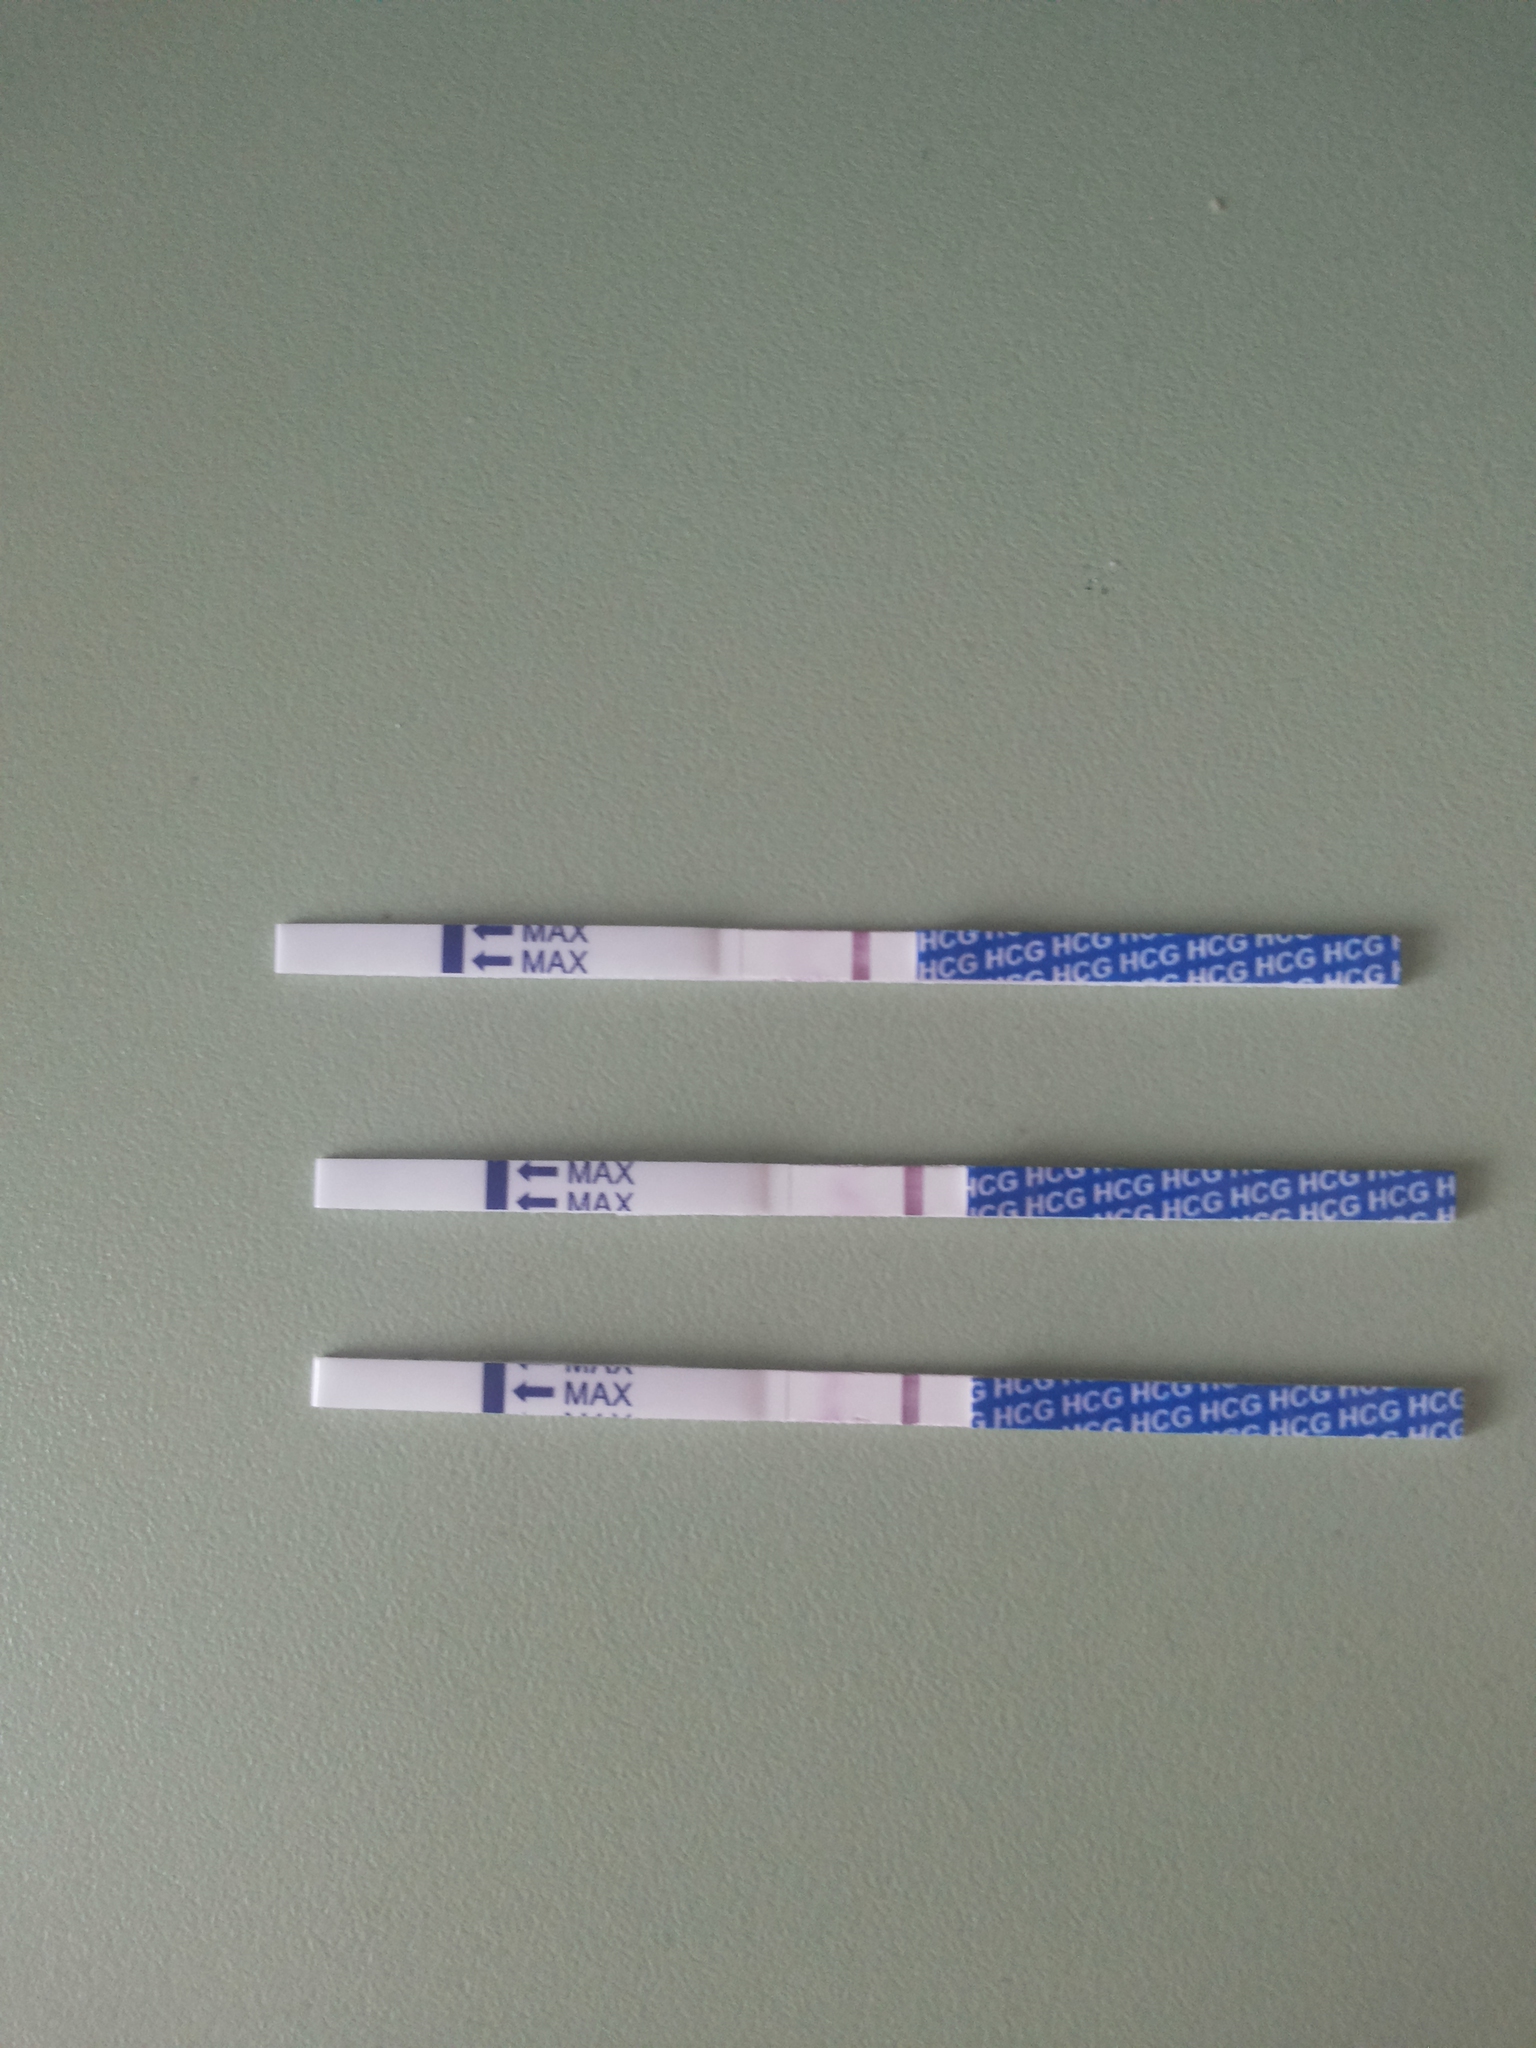 Положительный тест на беременность как выглядит фото. Тест на беременность 2 poloska. Тест на беременность с 2 тест полосками. Тест на беременность 2 полоски два теста. Тест на беременность Классик 1 тест полоски.